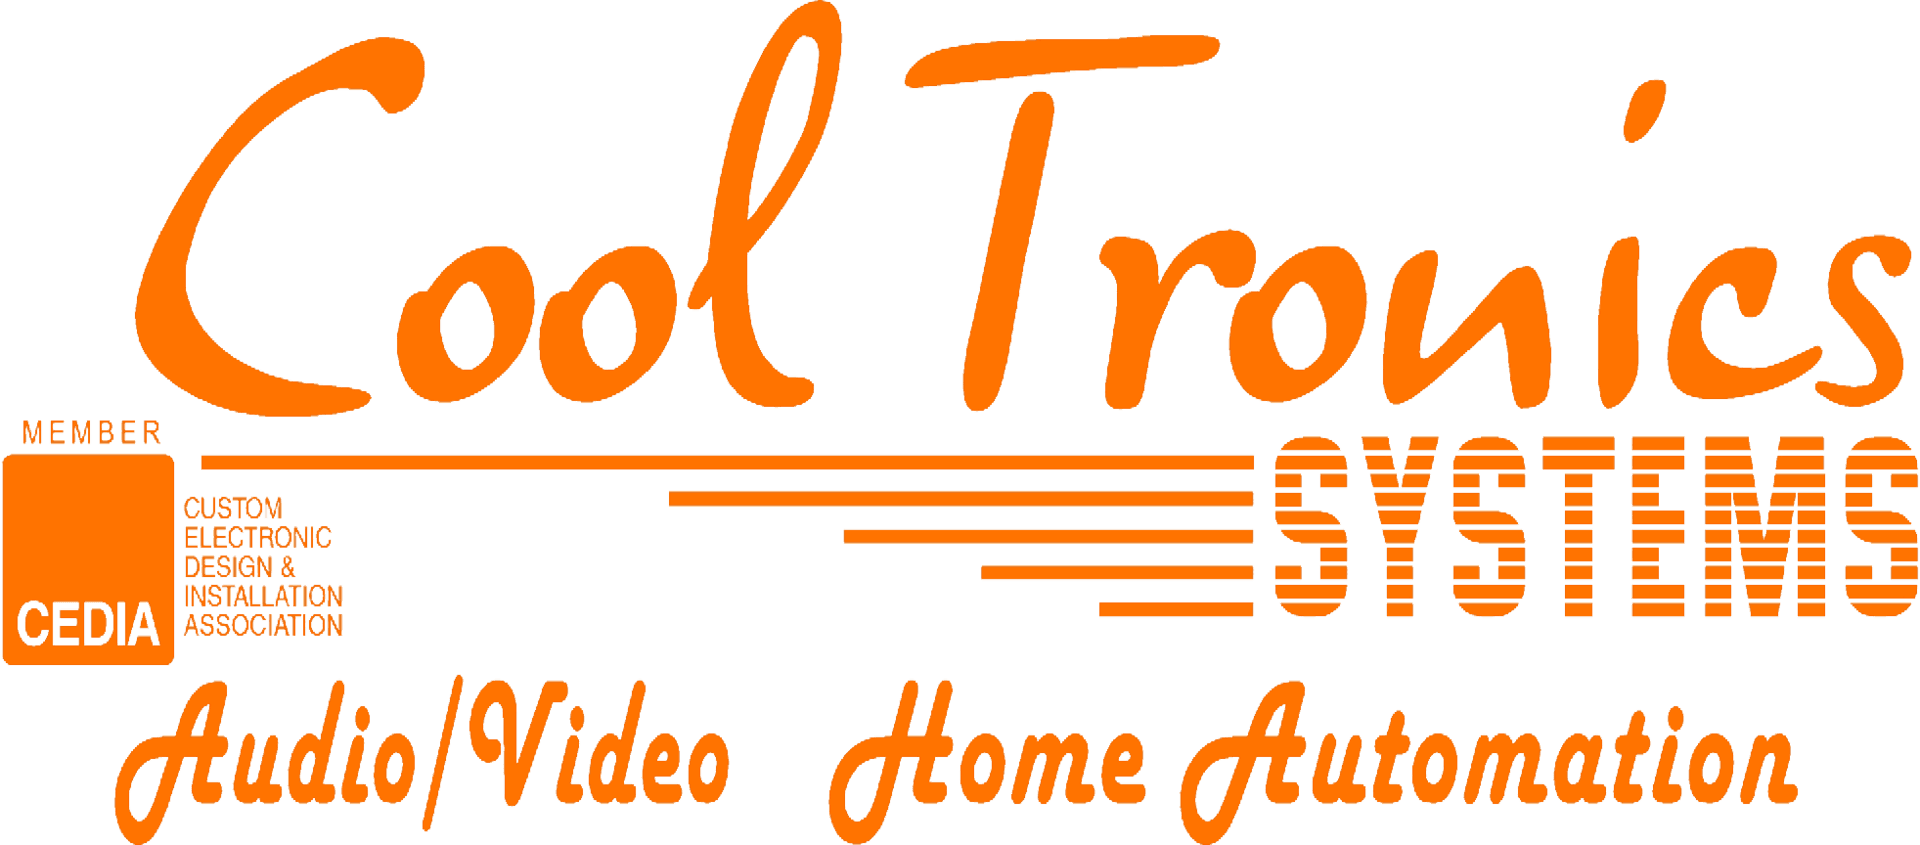 Cool Tronics - Logo